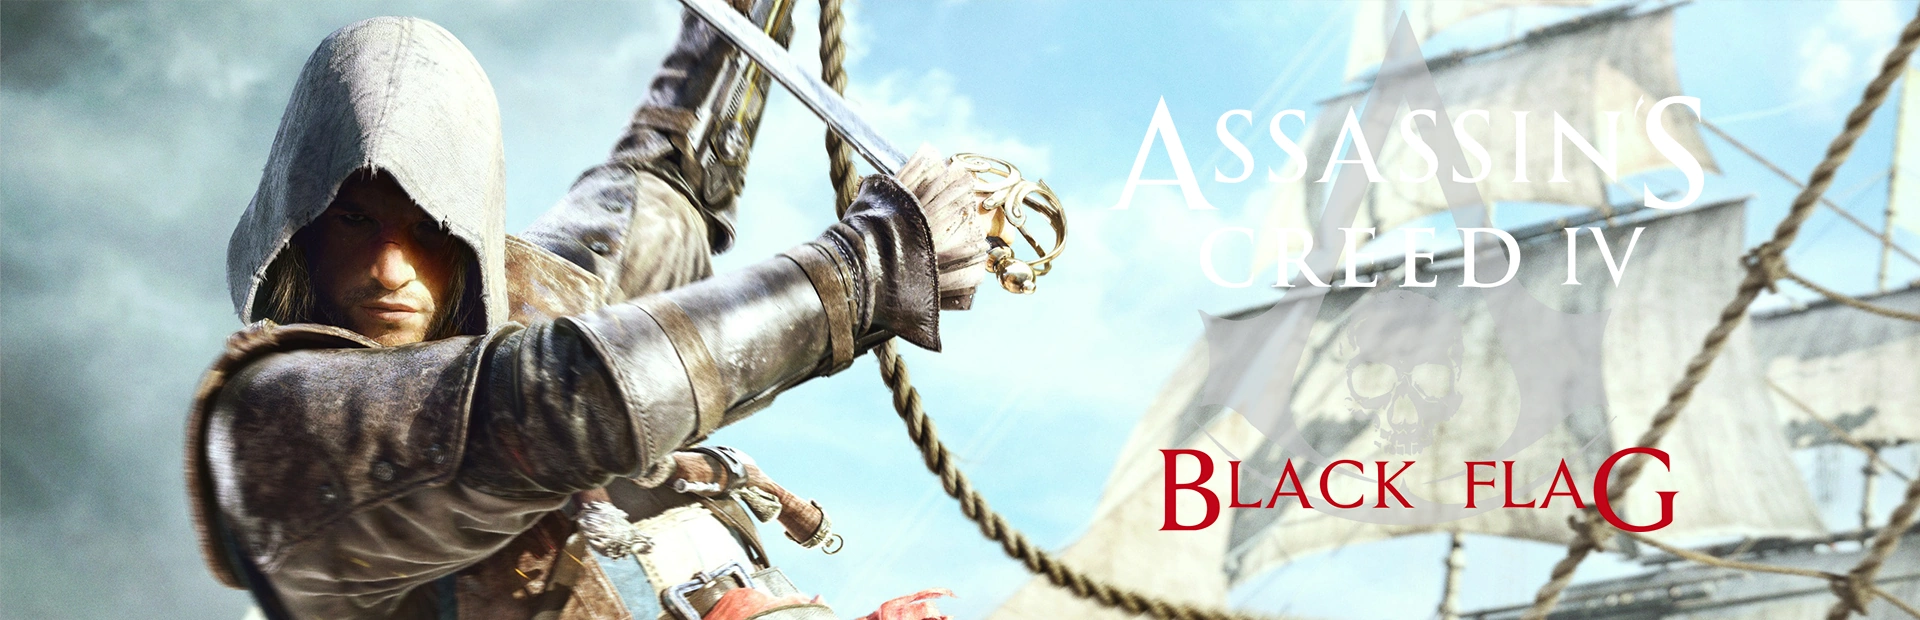 دانلود بازی Assassin’s Creed IV Black Flag برای کامپیوتر | گیمباتو